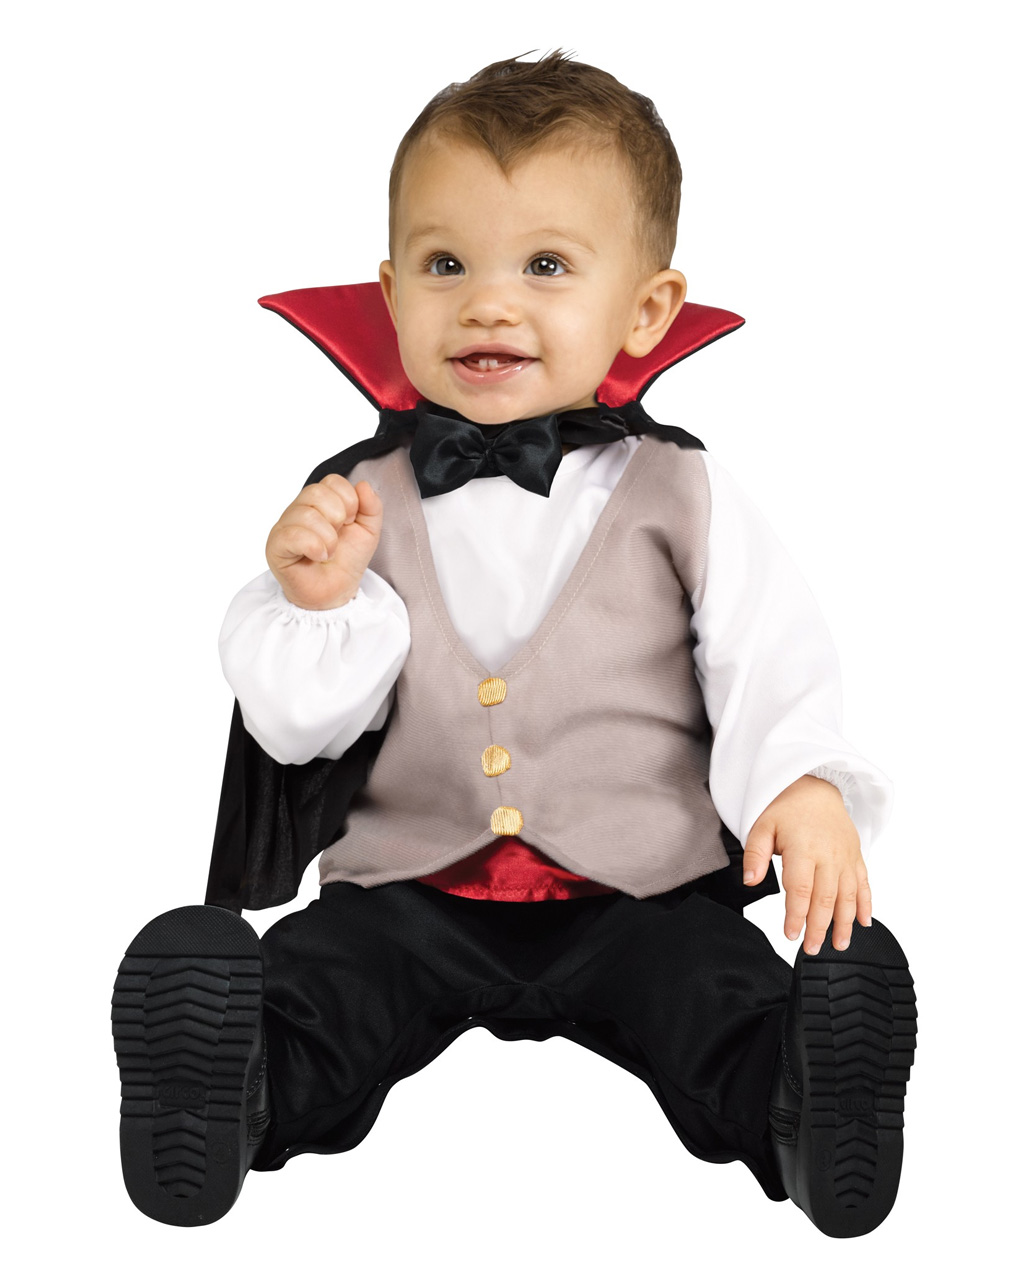 Klein Dracula Babykostüm für Halloween S 6-12 Monate von Horror-Shop.com